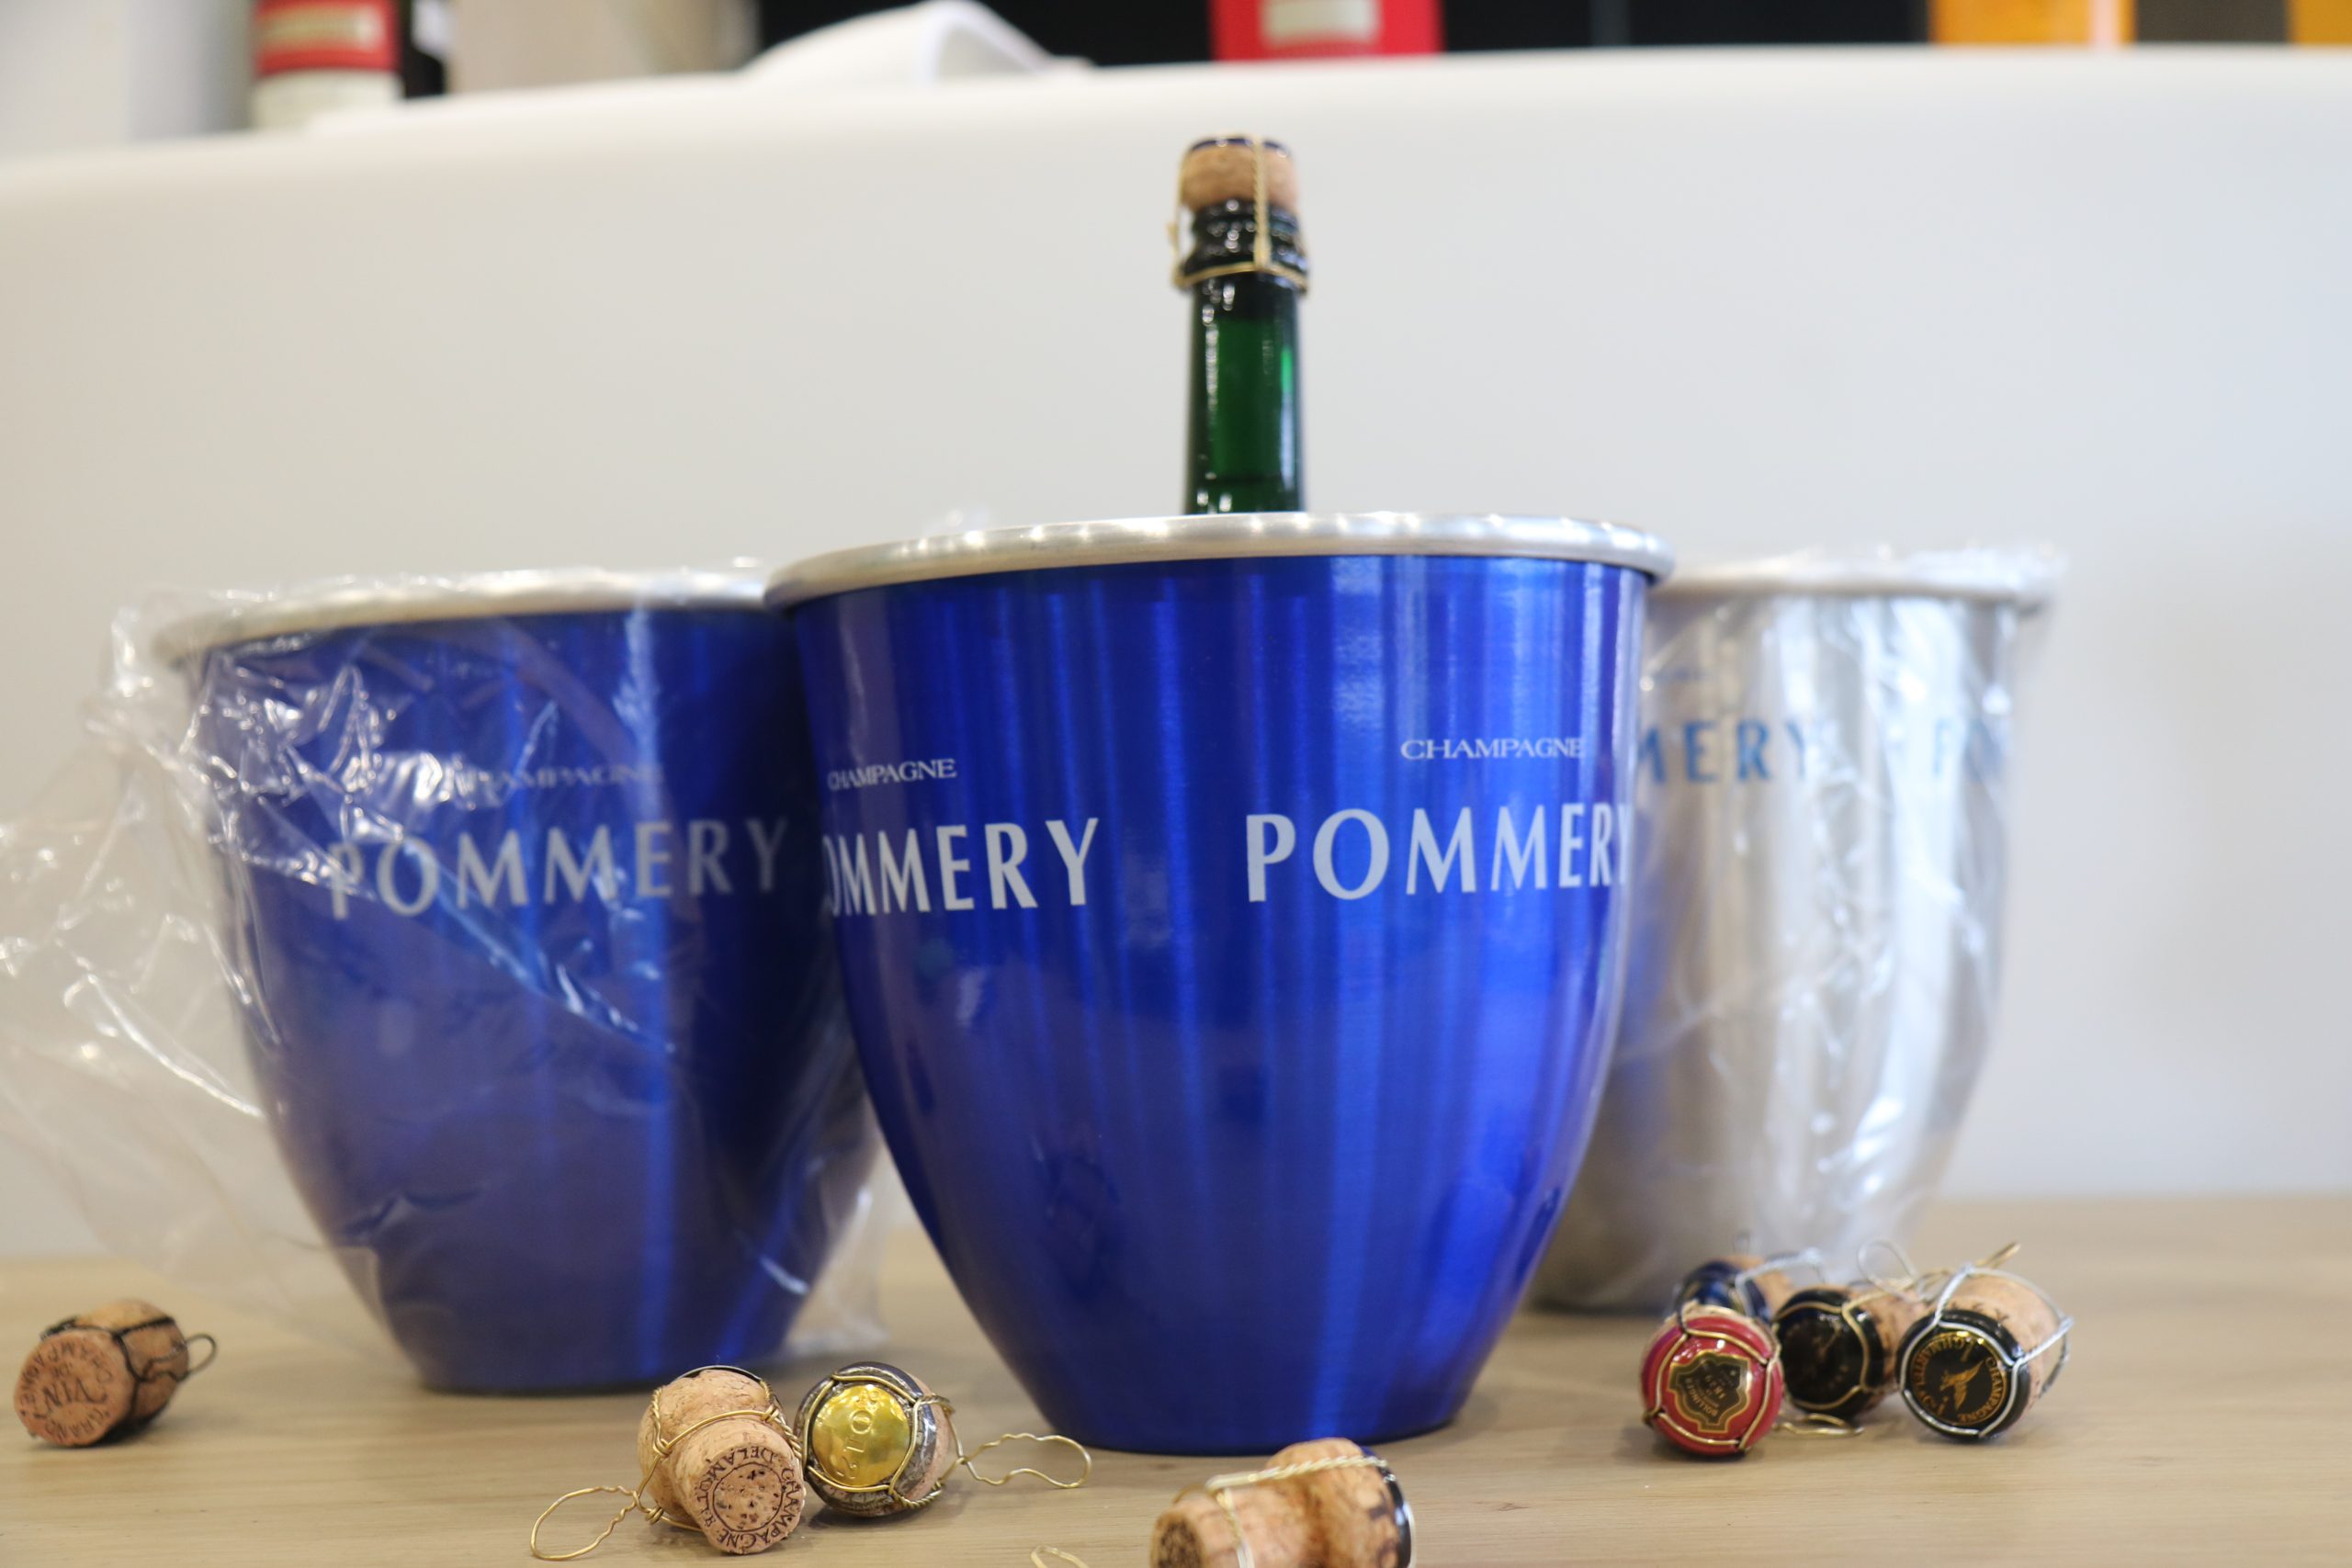 Pommery Champagne jeges vödrök – 24.000.-Ft/db